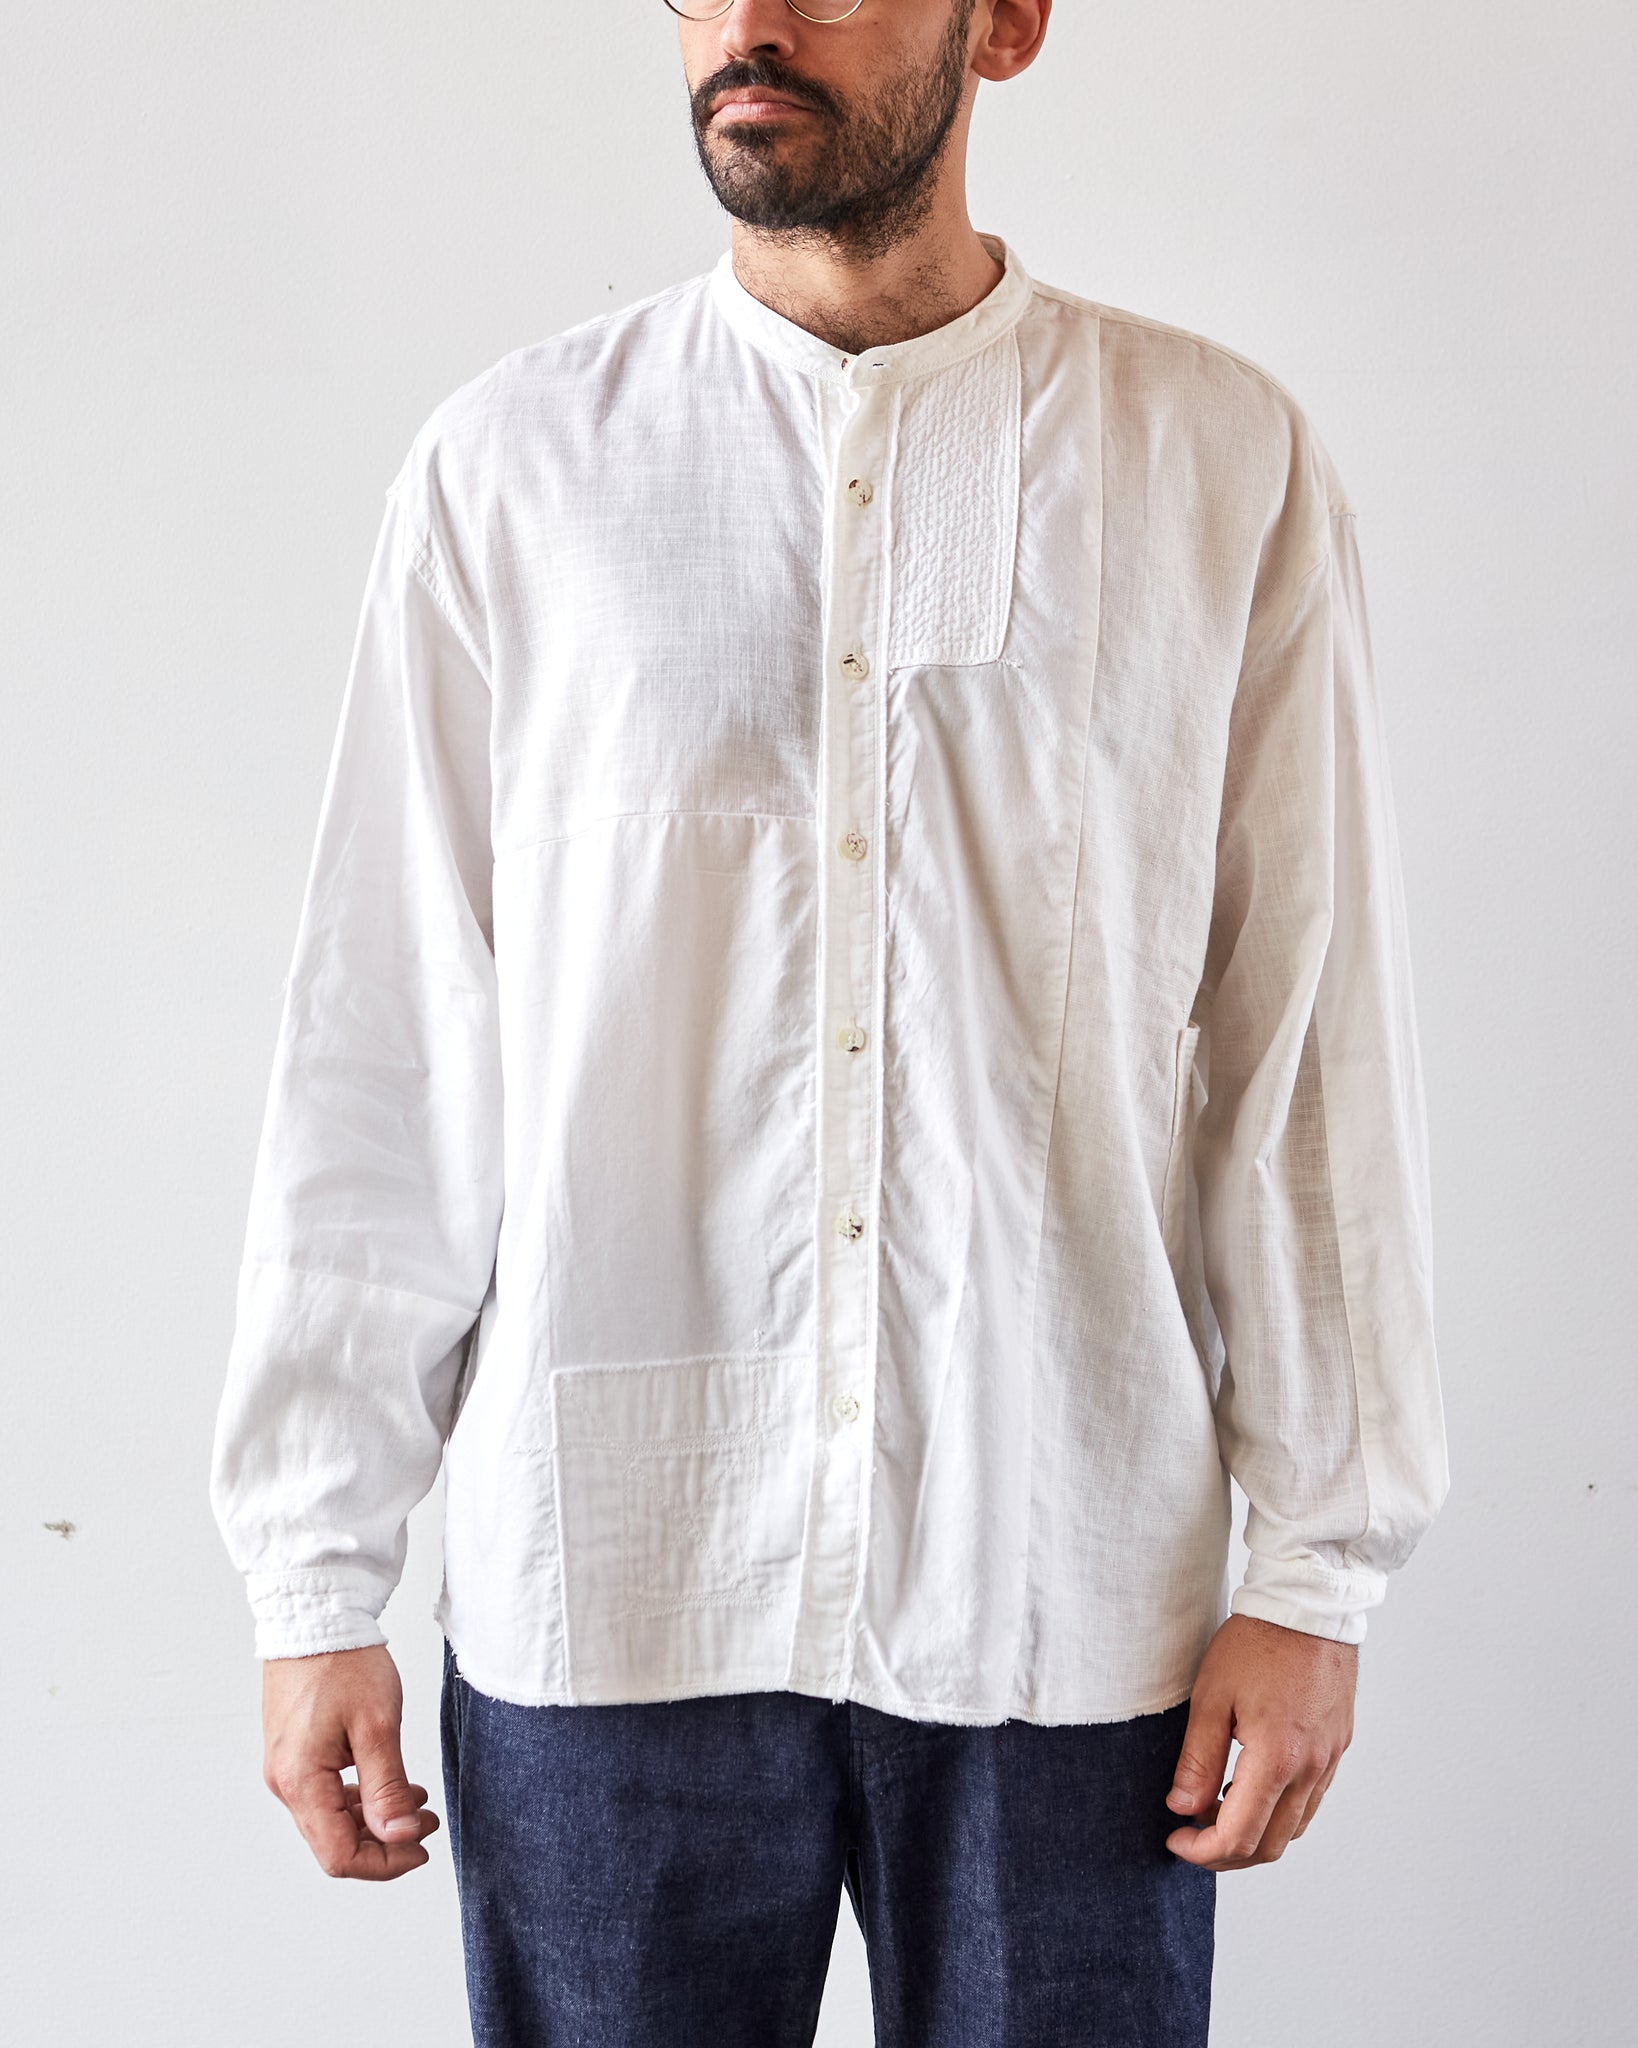 Kapital Katmandu Band Collar Unisex Shirt, White